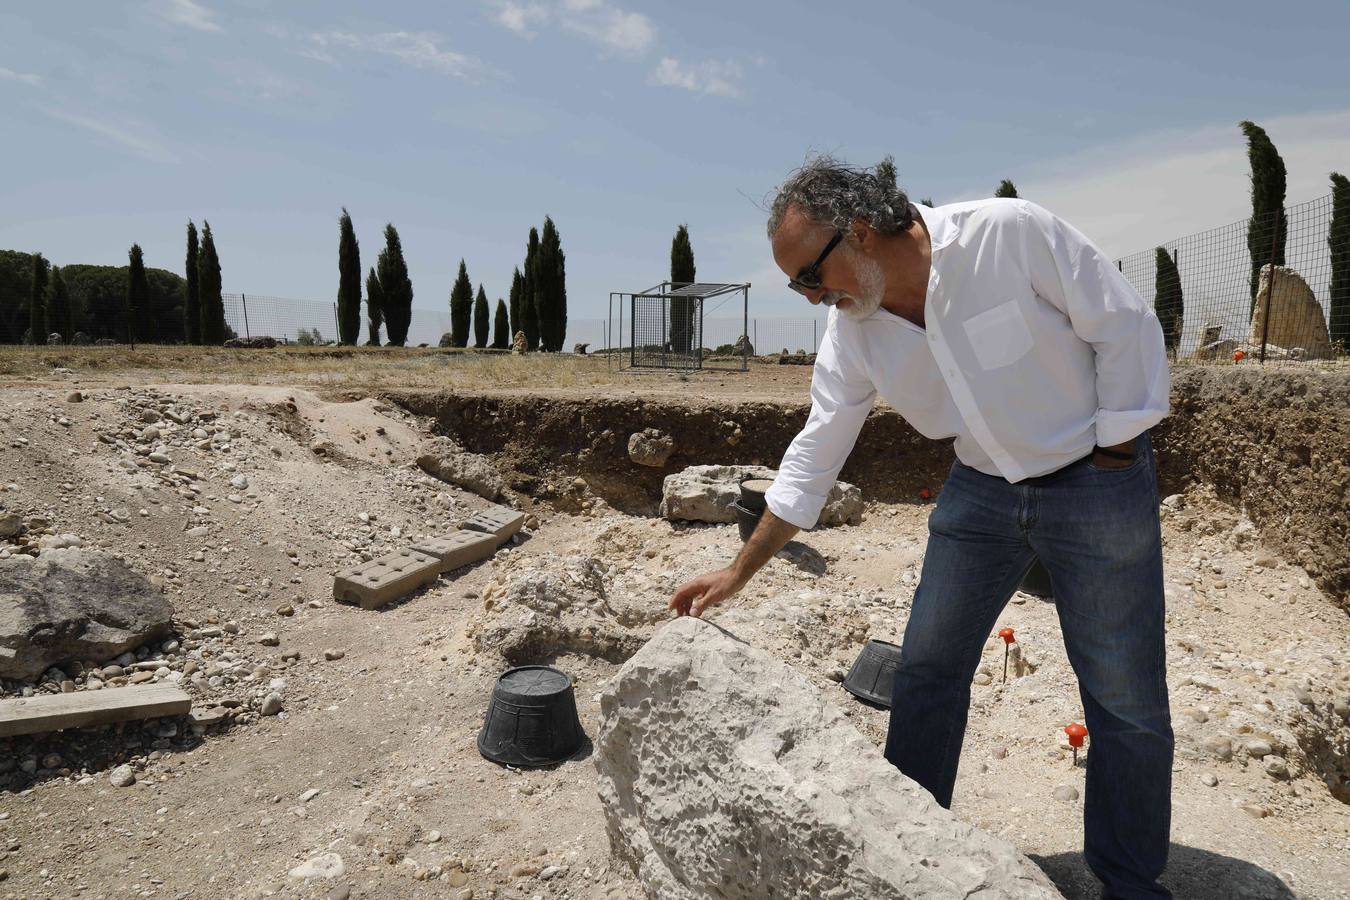 La campaña de verano en el yacimiento arqueológico de la localidad vallisoletana de Padilla de Duero ha deparado el descubrimiento de cuatro tumbas del siglo II antes de Cristo en la necrópolis vacceo romana de Las Ruedas